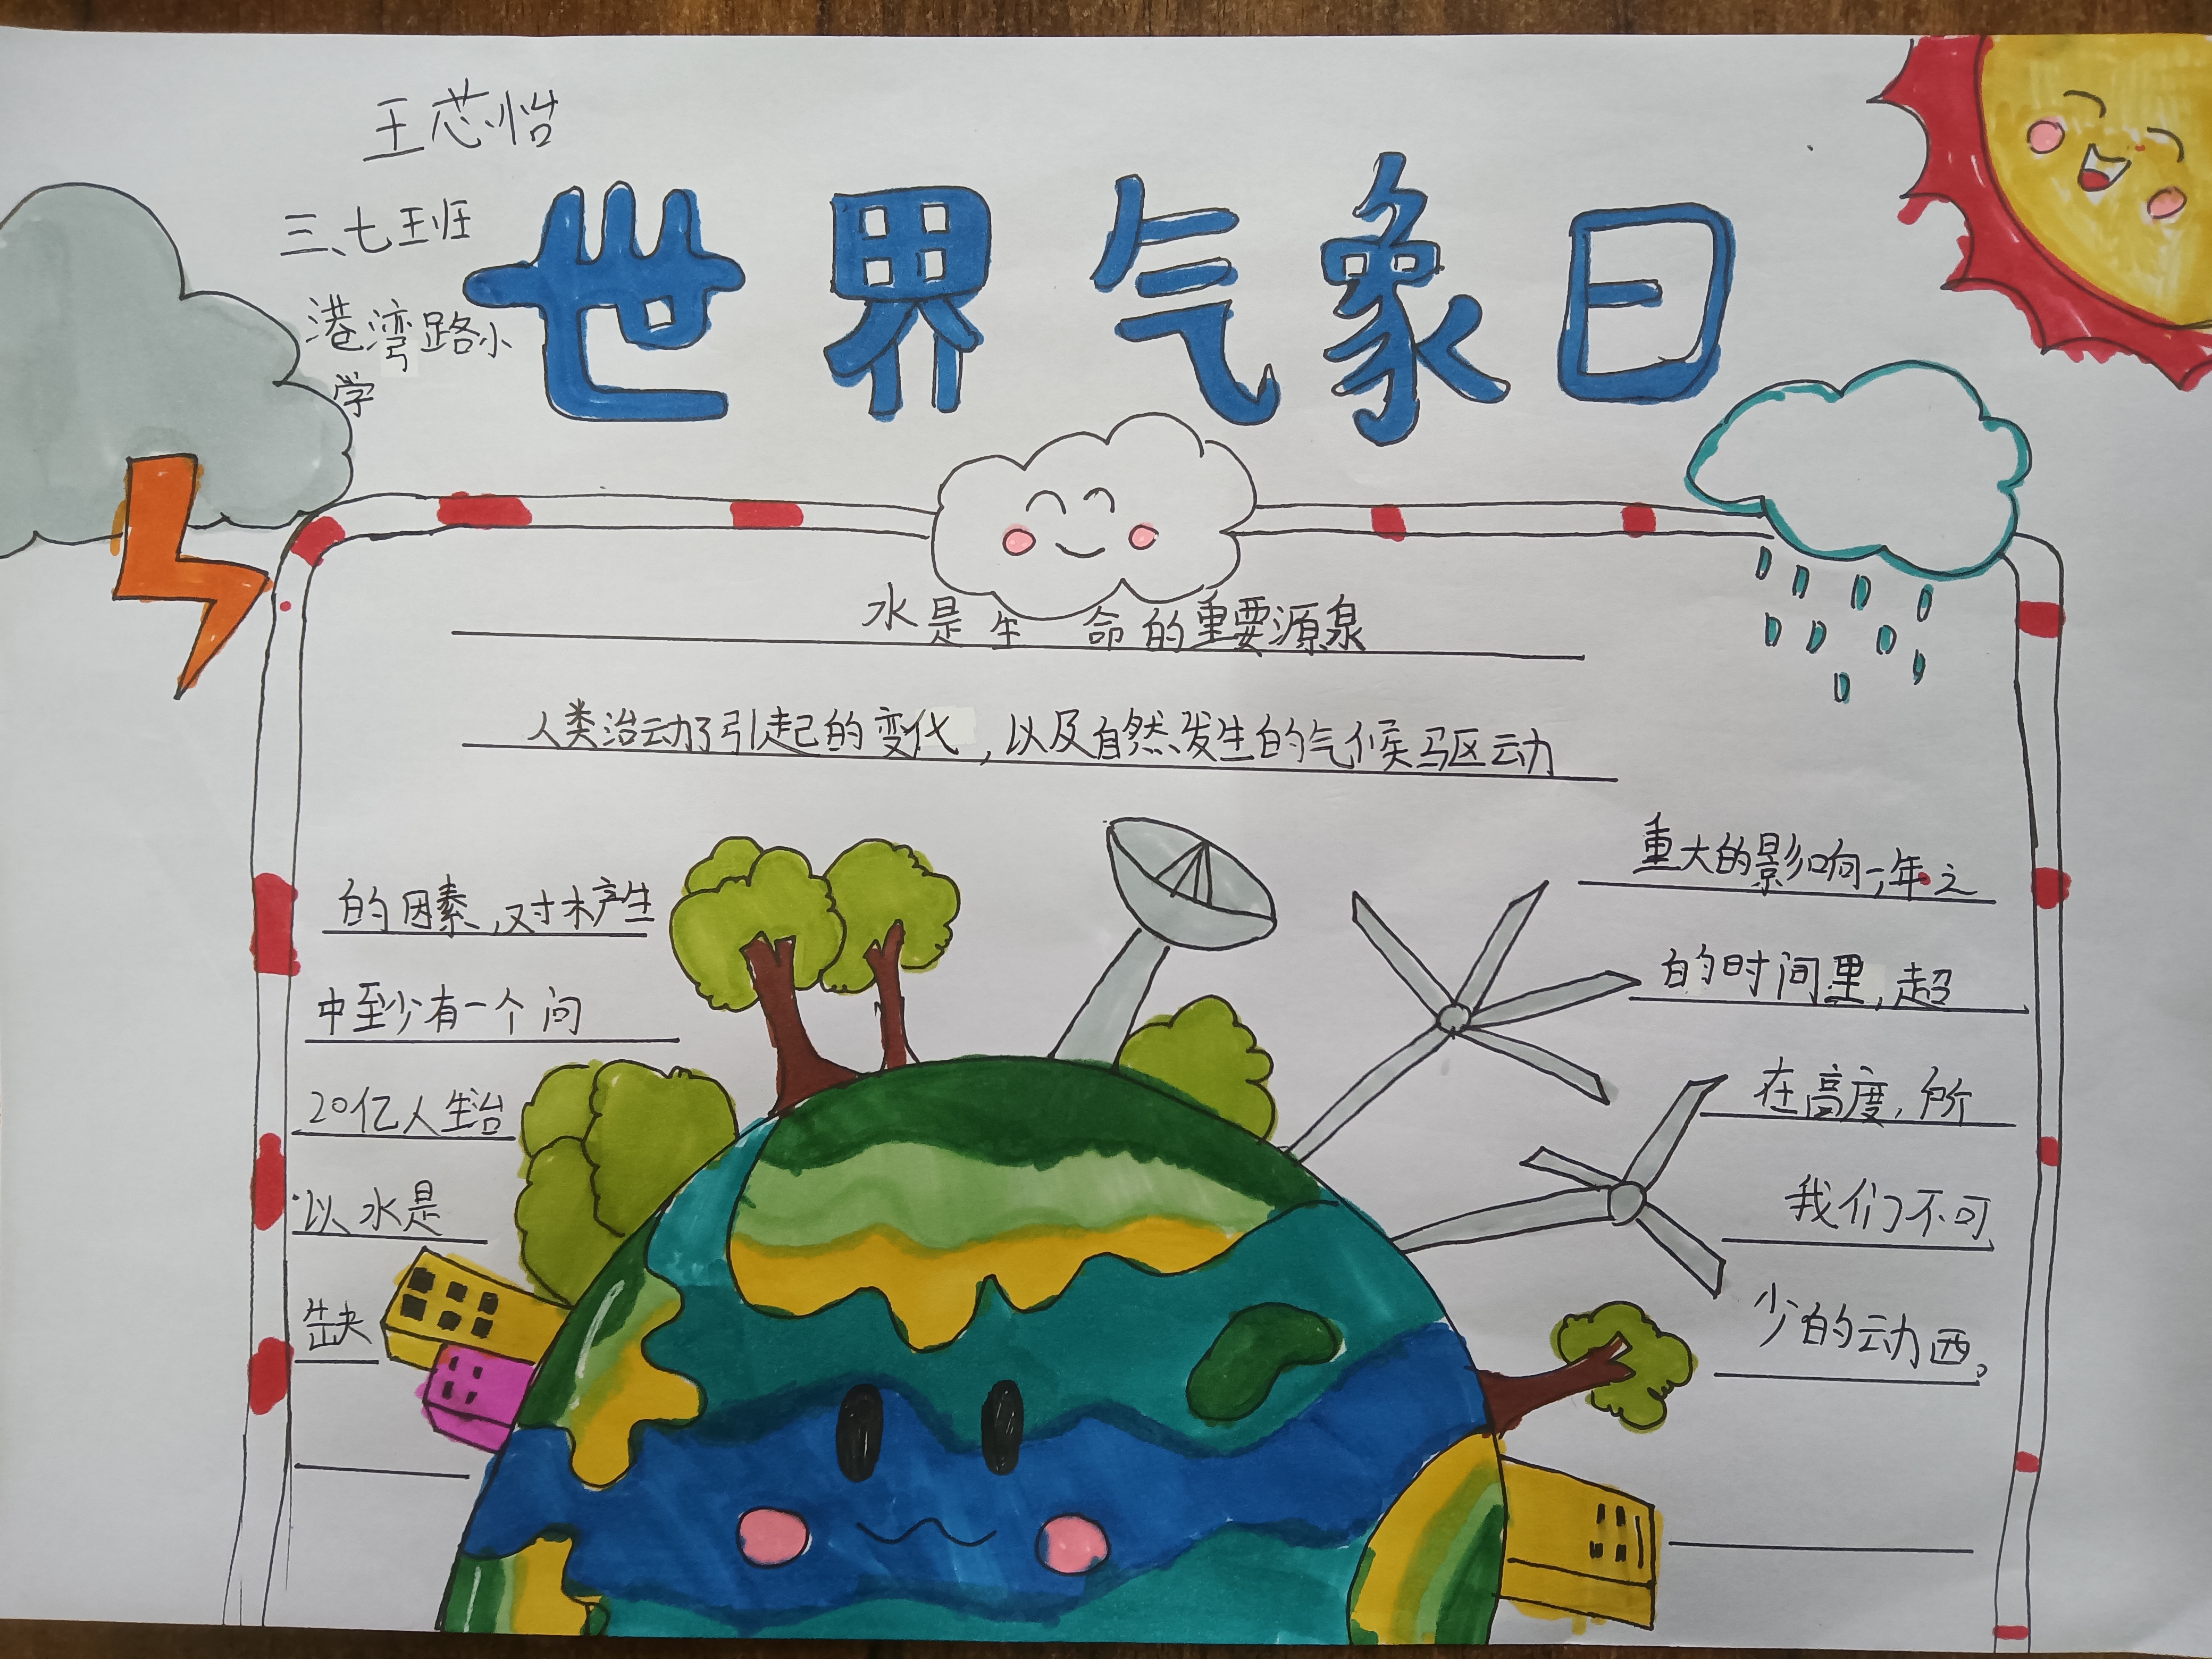 郑州市管城区港湾路小学开展世界气象日主题教育活动